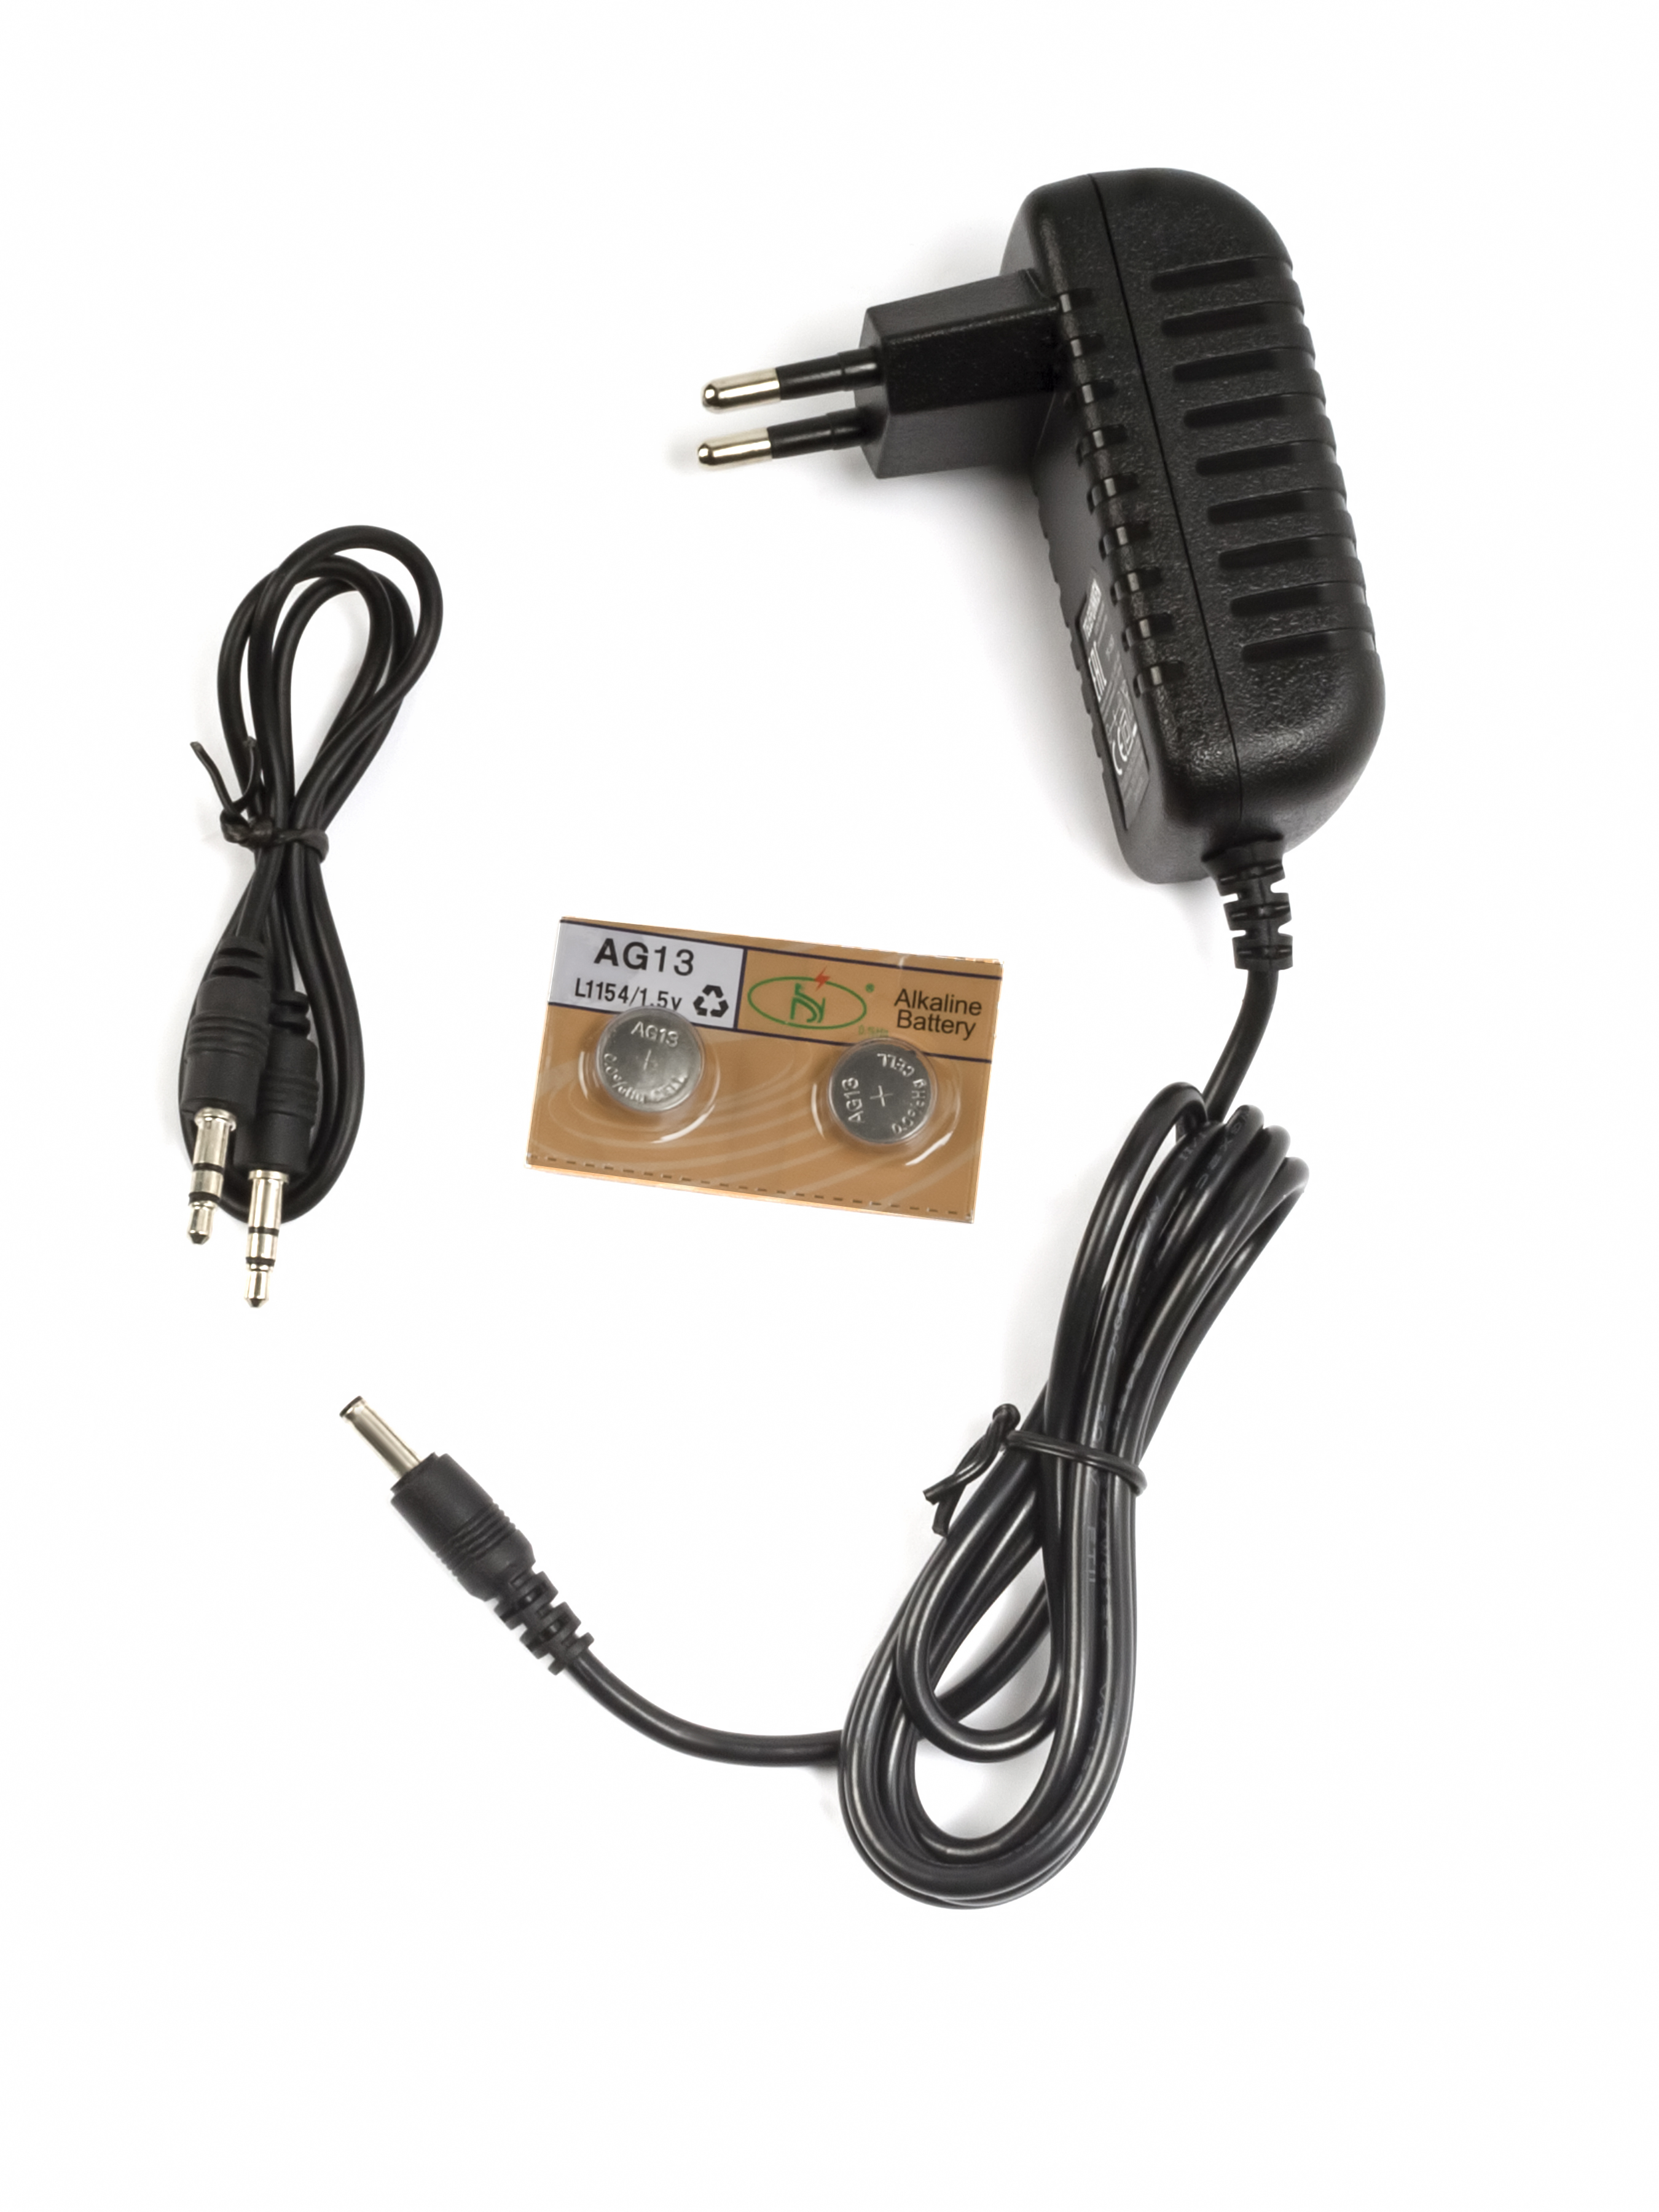 Telefunken TF-1508 Радиоприемник настольный черный/серебристый